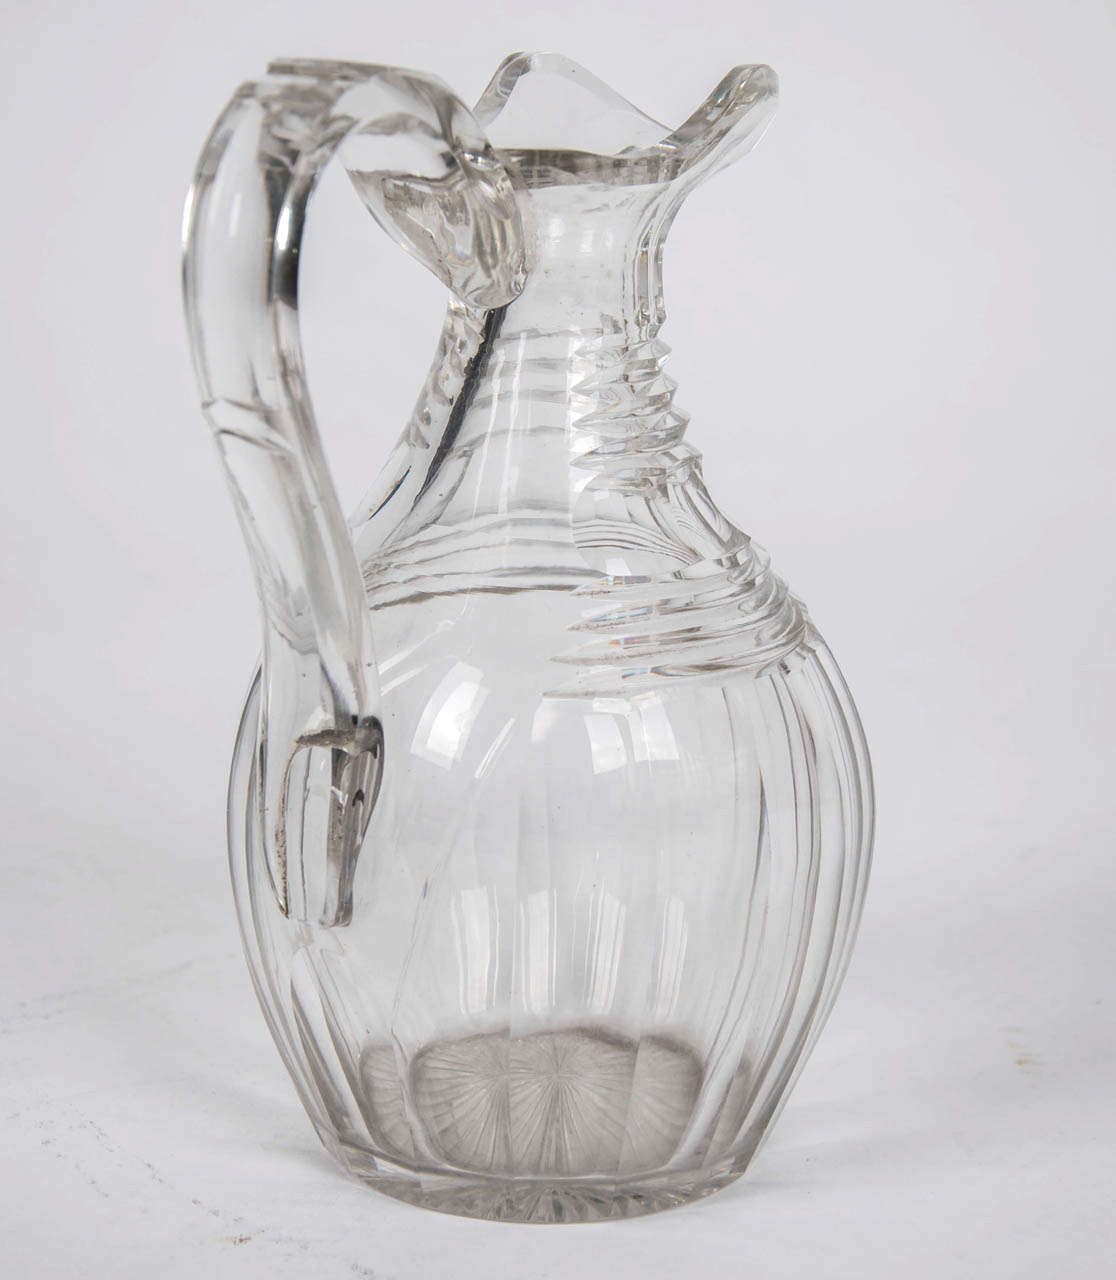 waterford crystal claret jug